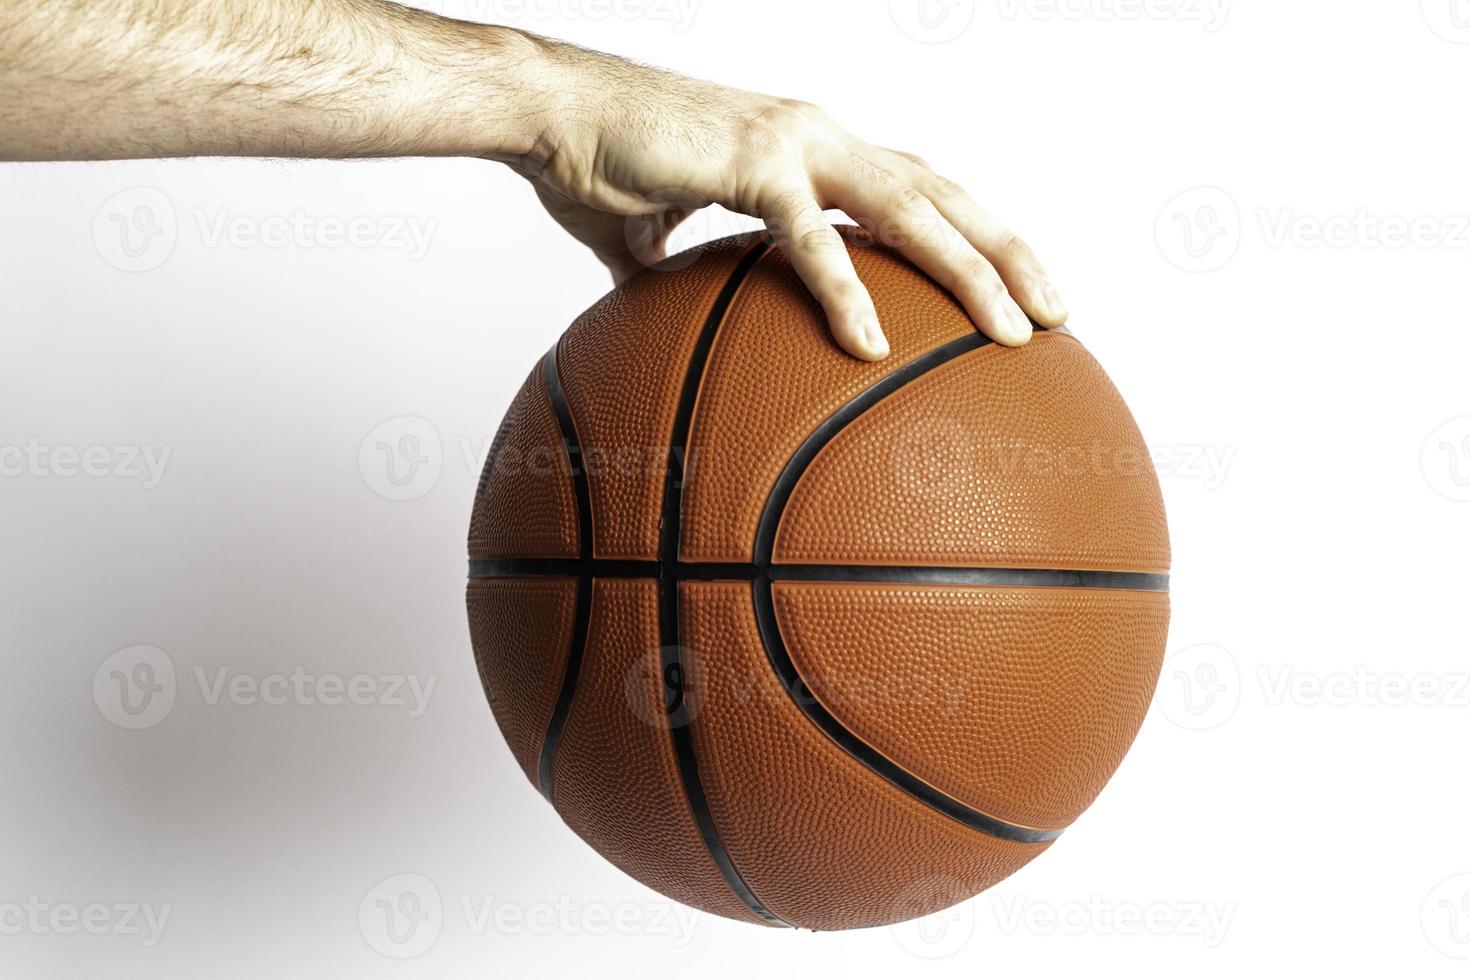 tenendo un pallone da basket foto